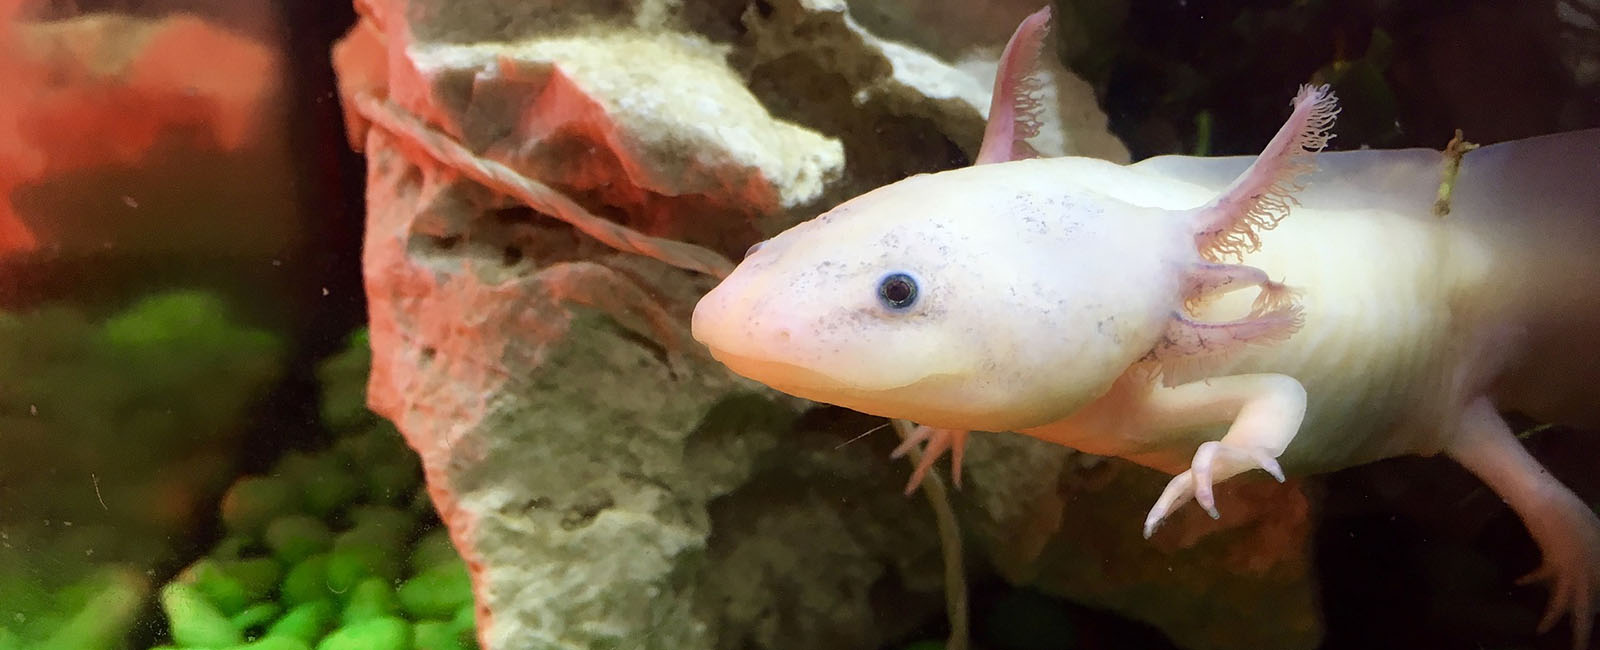 Axolotl-Haltung: Diese Dinge solltet ihr unbedingt wissen